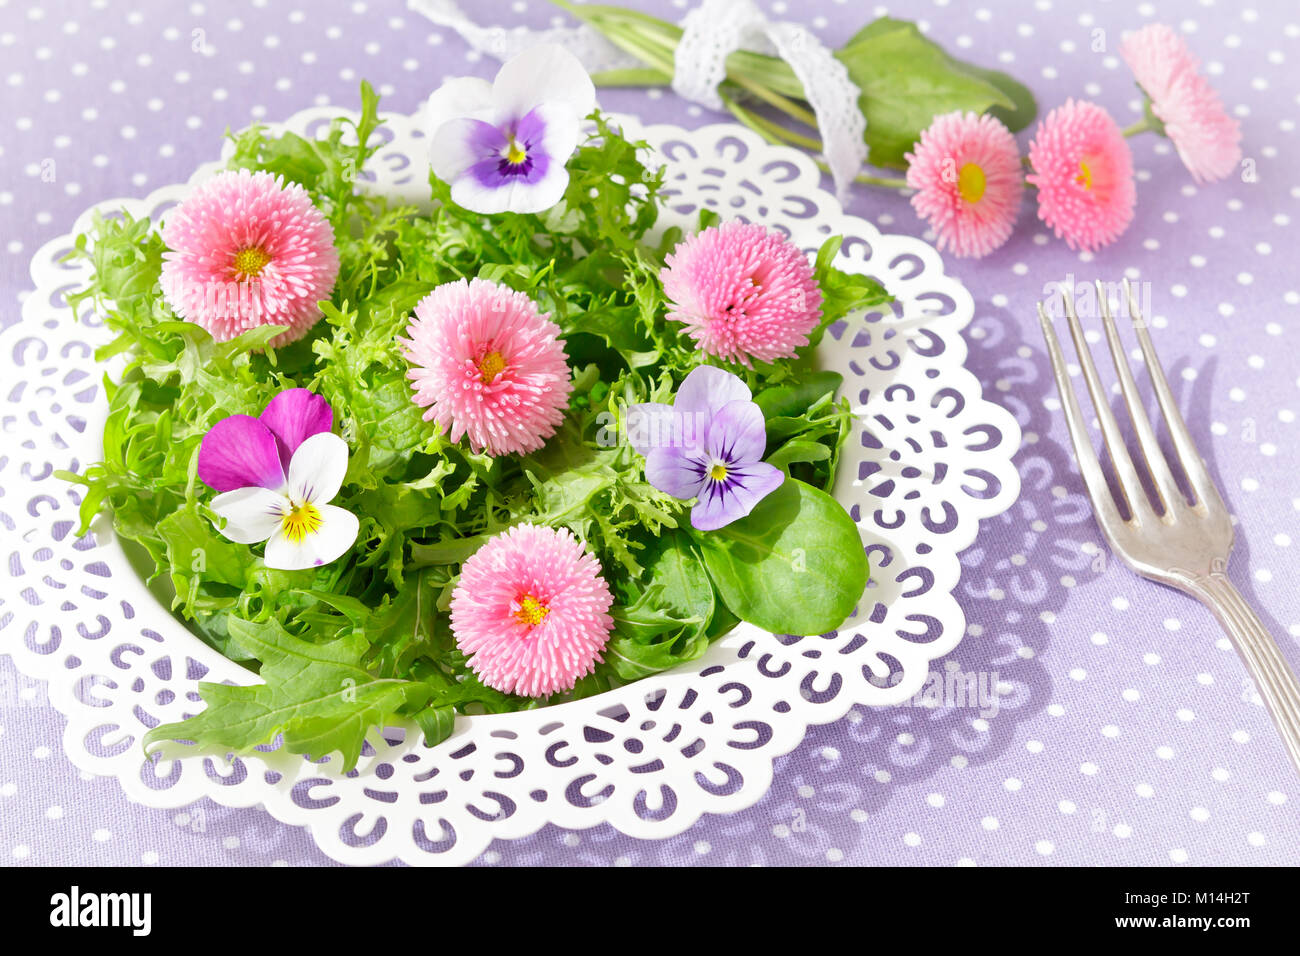 Piastra bianca con una insalata verde mista le foglie di lattuga e commestibile daisy e pansy fiori, insieme con una forcella di vintage su un nostalgico backgroun lilla Foto Stock